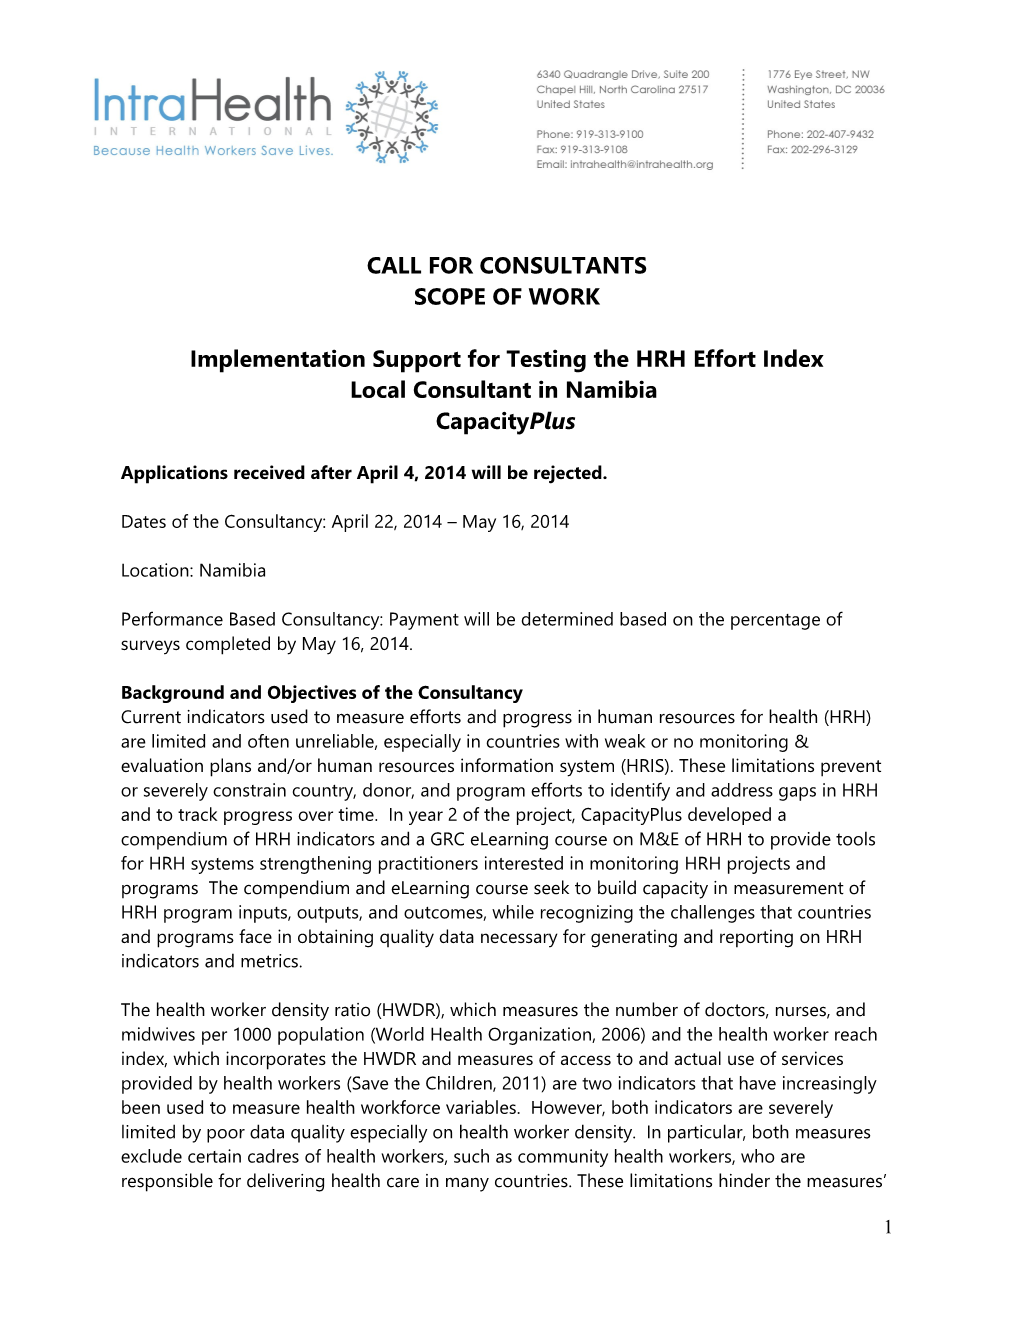 Implementation Support for Testing the HRH Effort Index